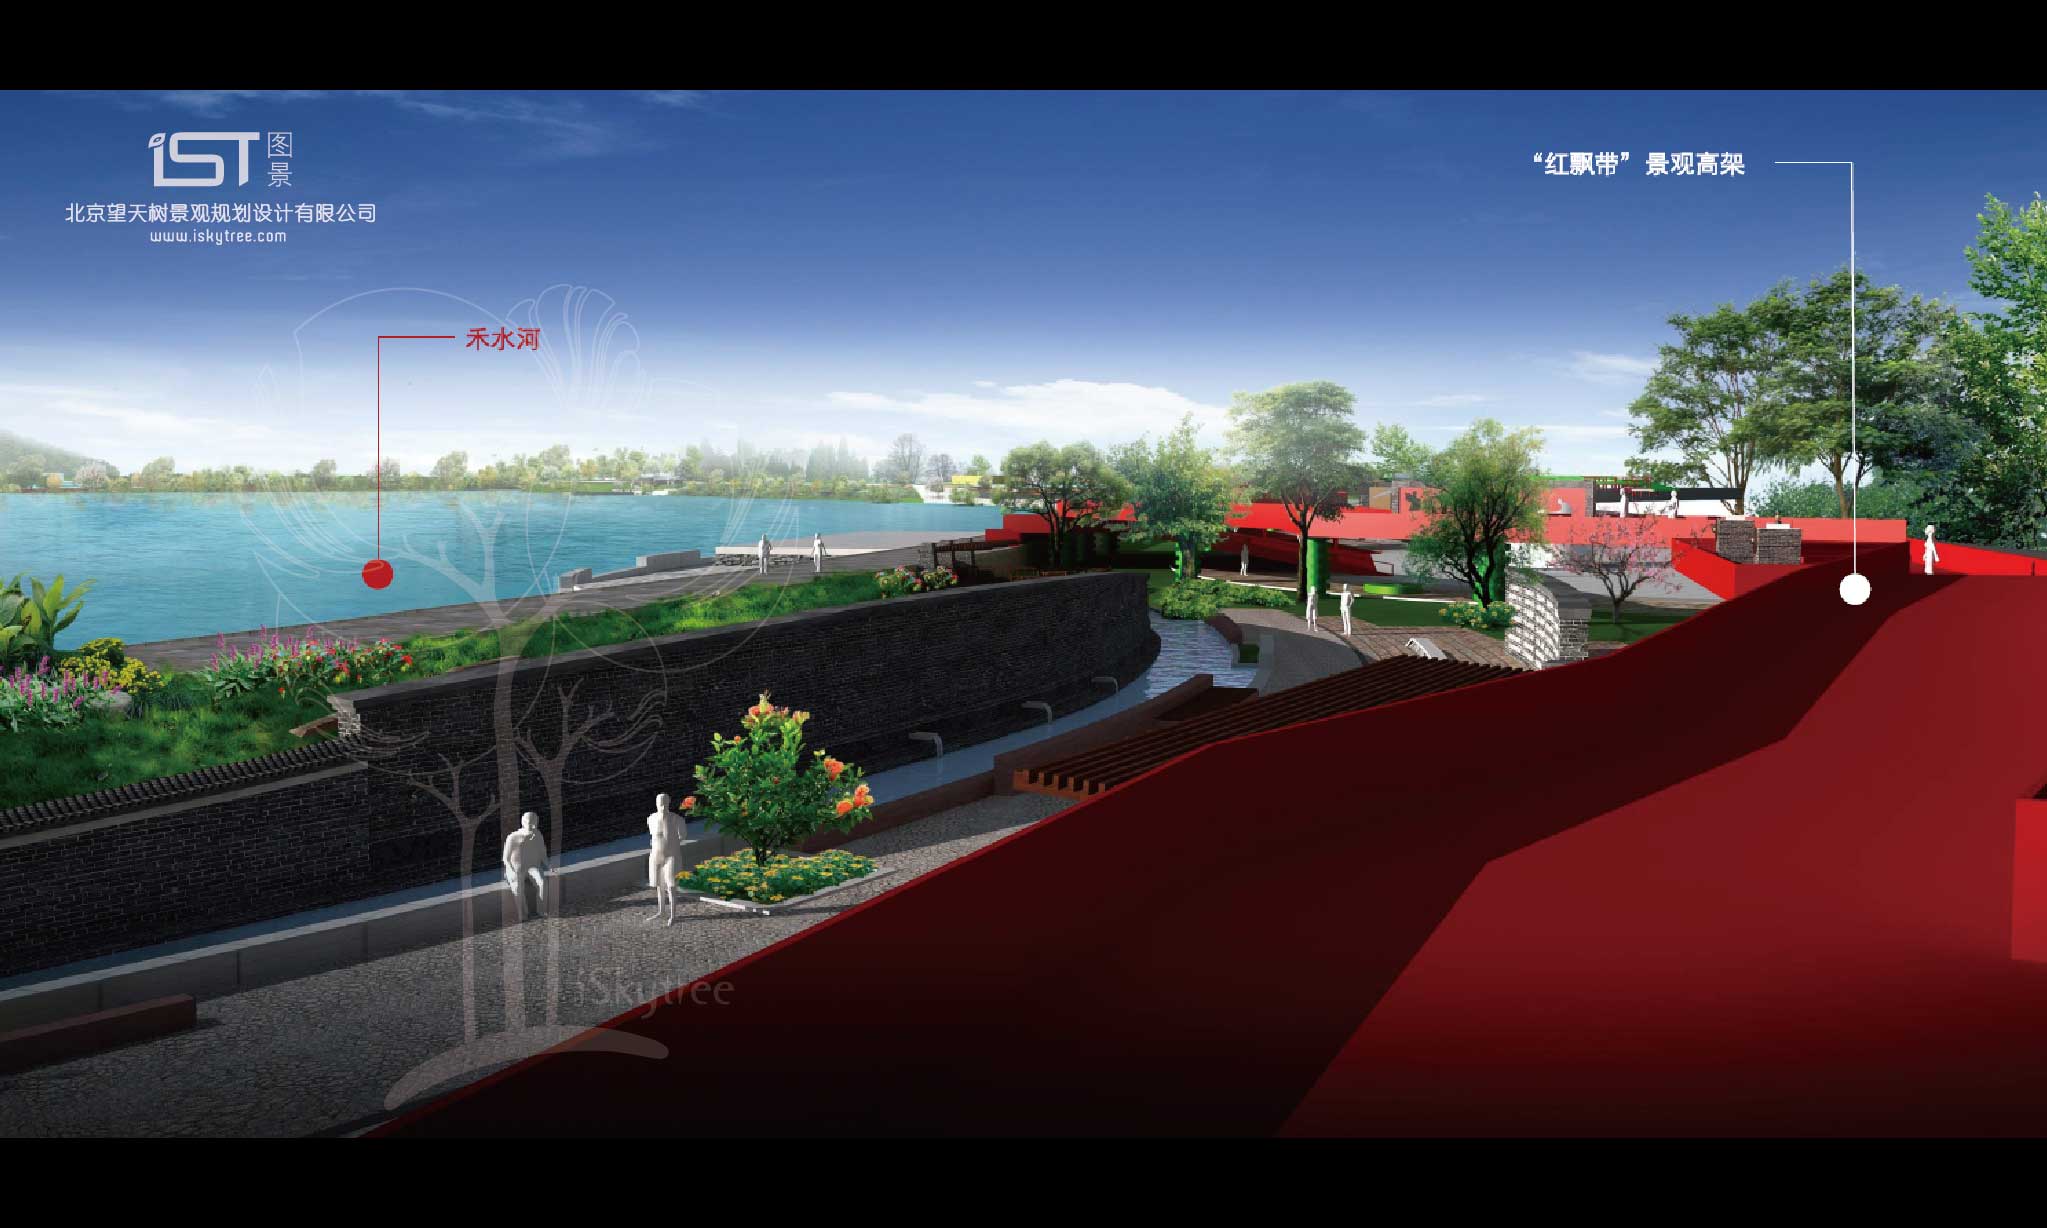 “紅飄帶”景觀廊道設計方案效果表現